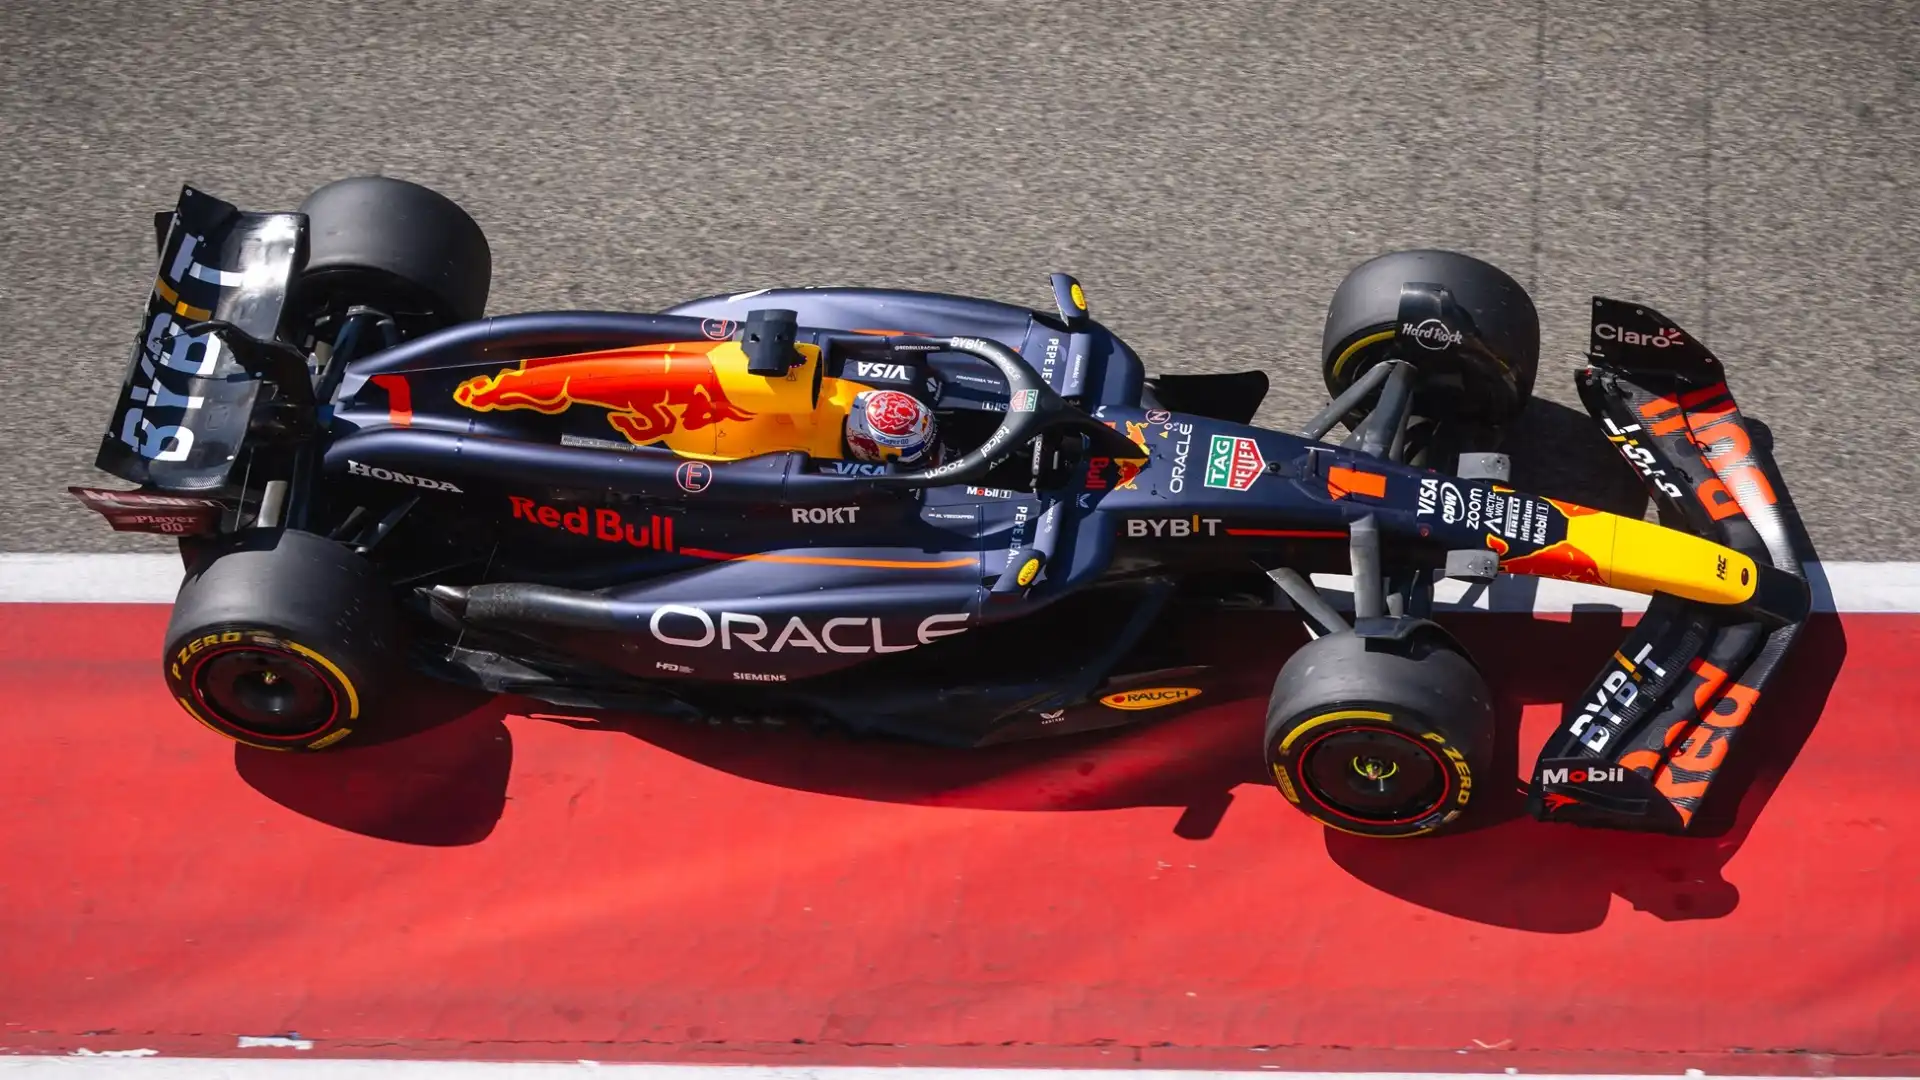 La nuova RB20 della Red Bull ha impressionato nelle prime due giornate di test della F1 in Bahrain, soprattutto con Max Verstappen